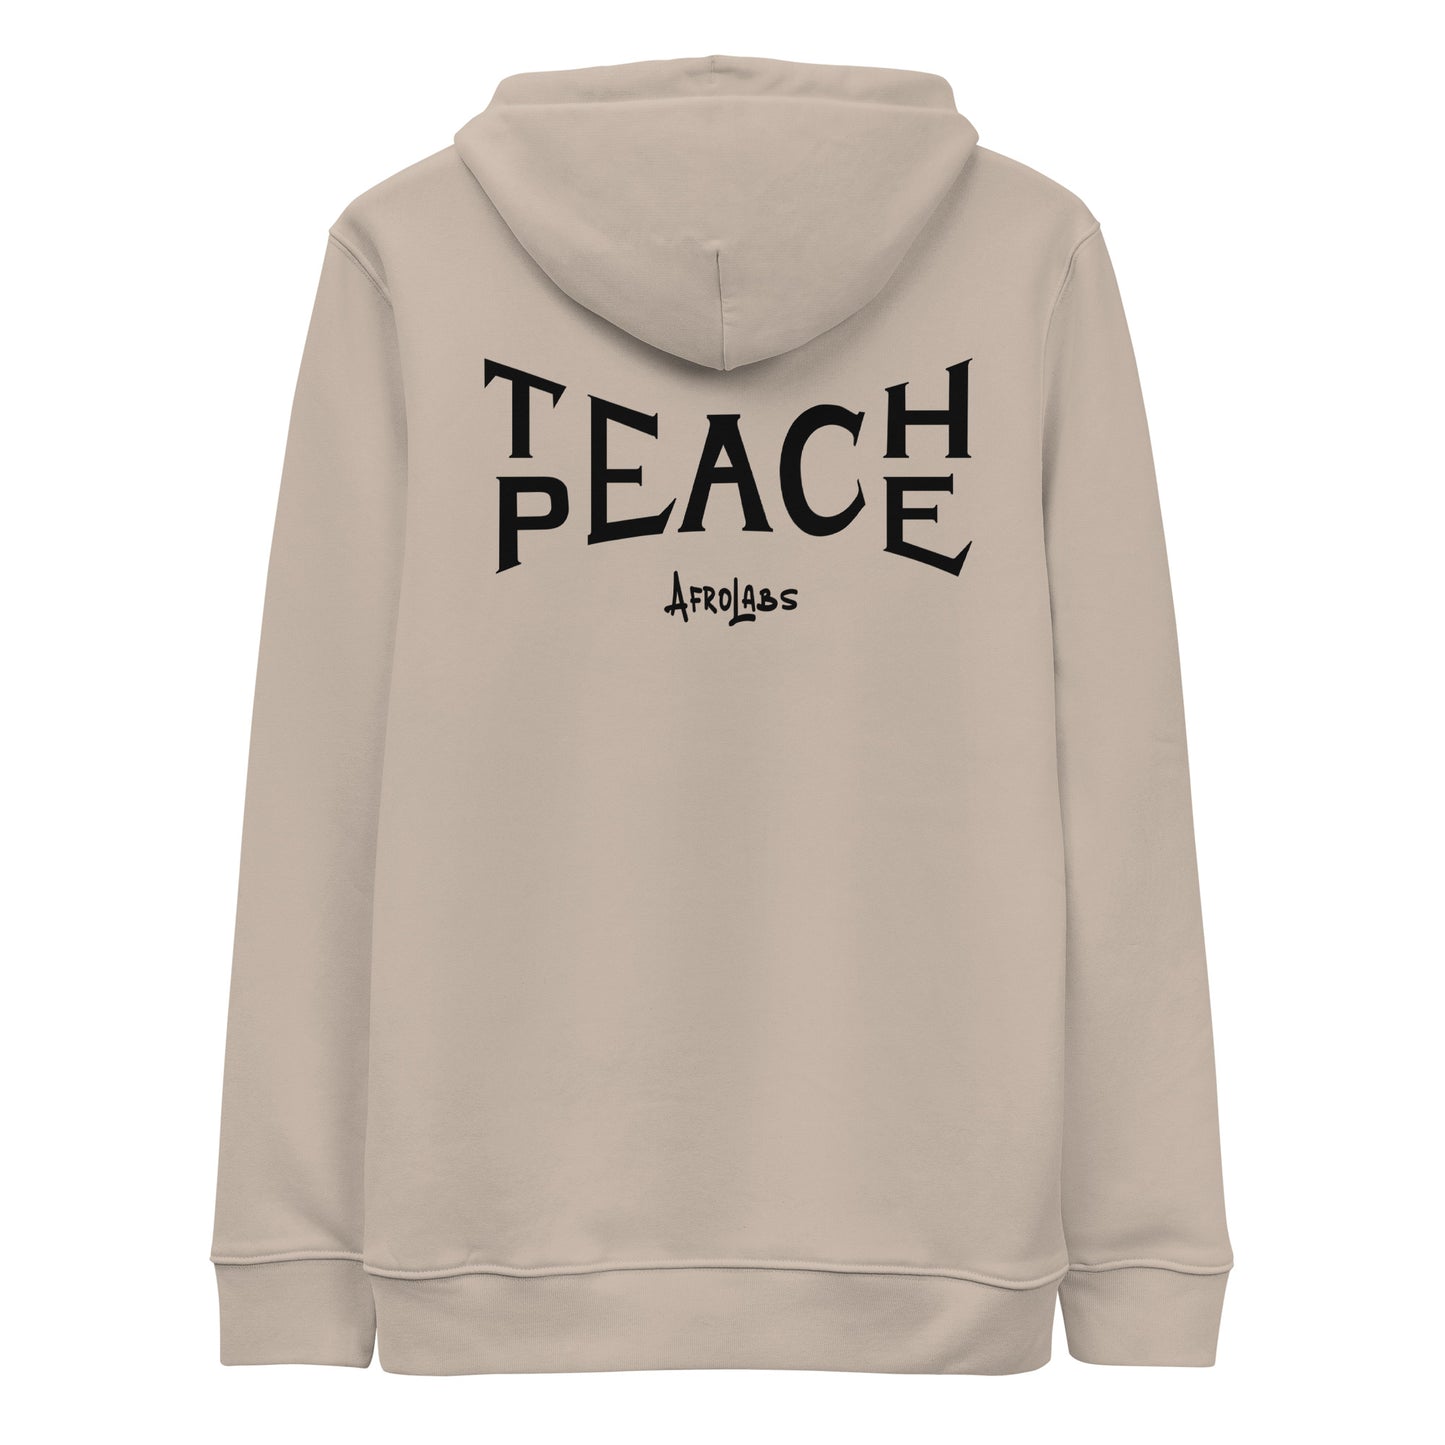 TEACH PEACE HOODIE Beige